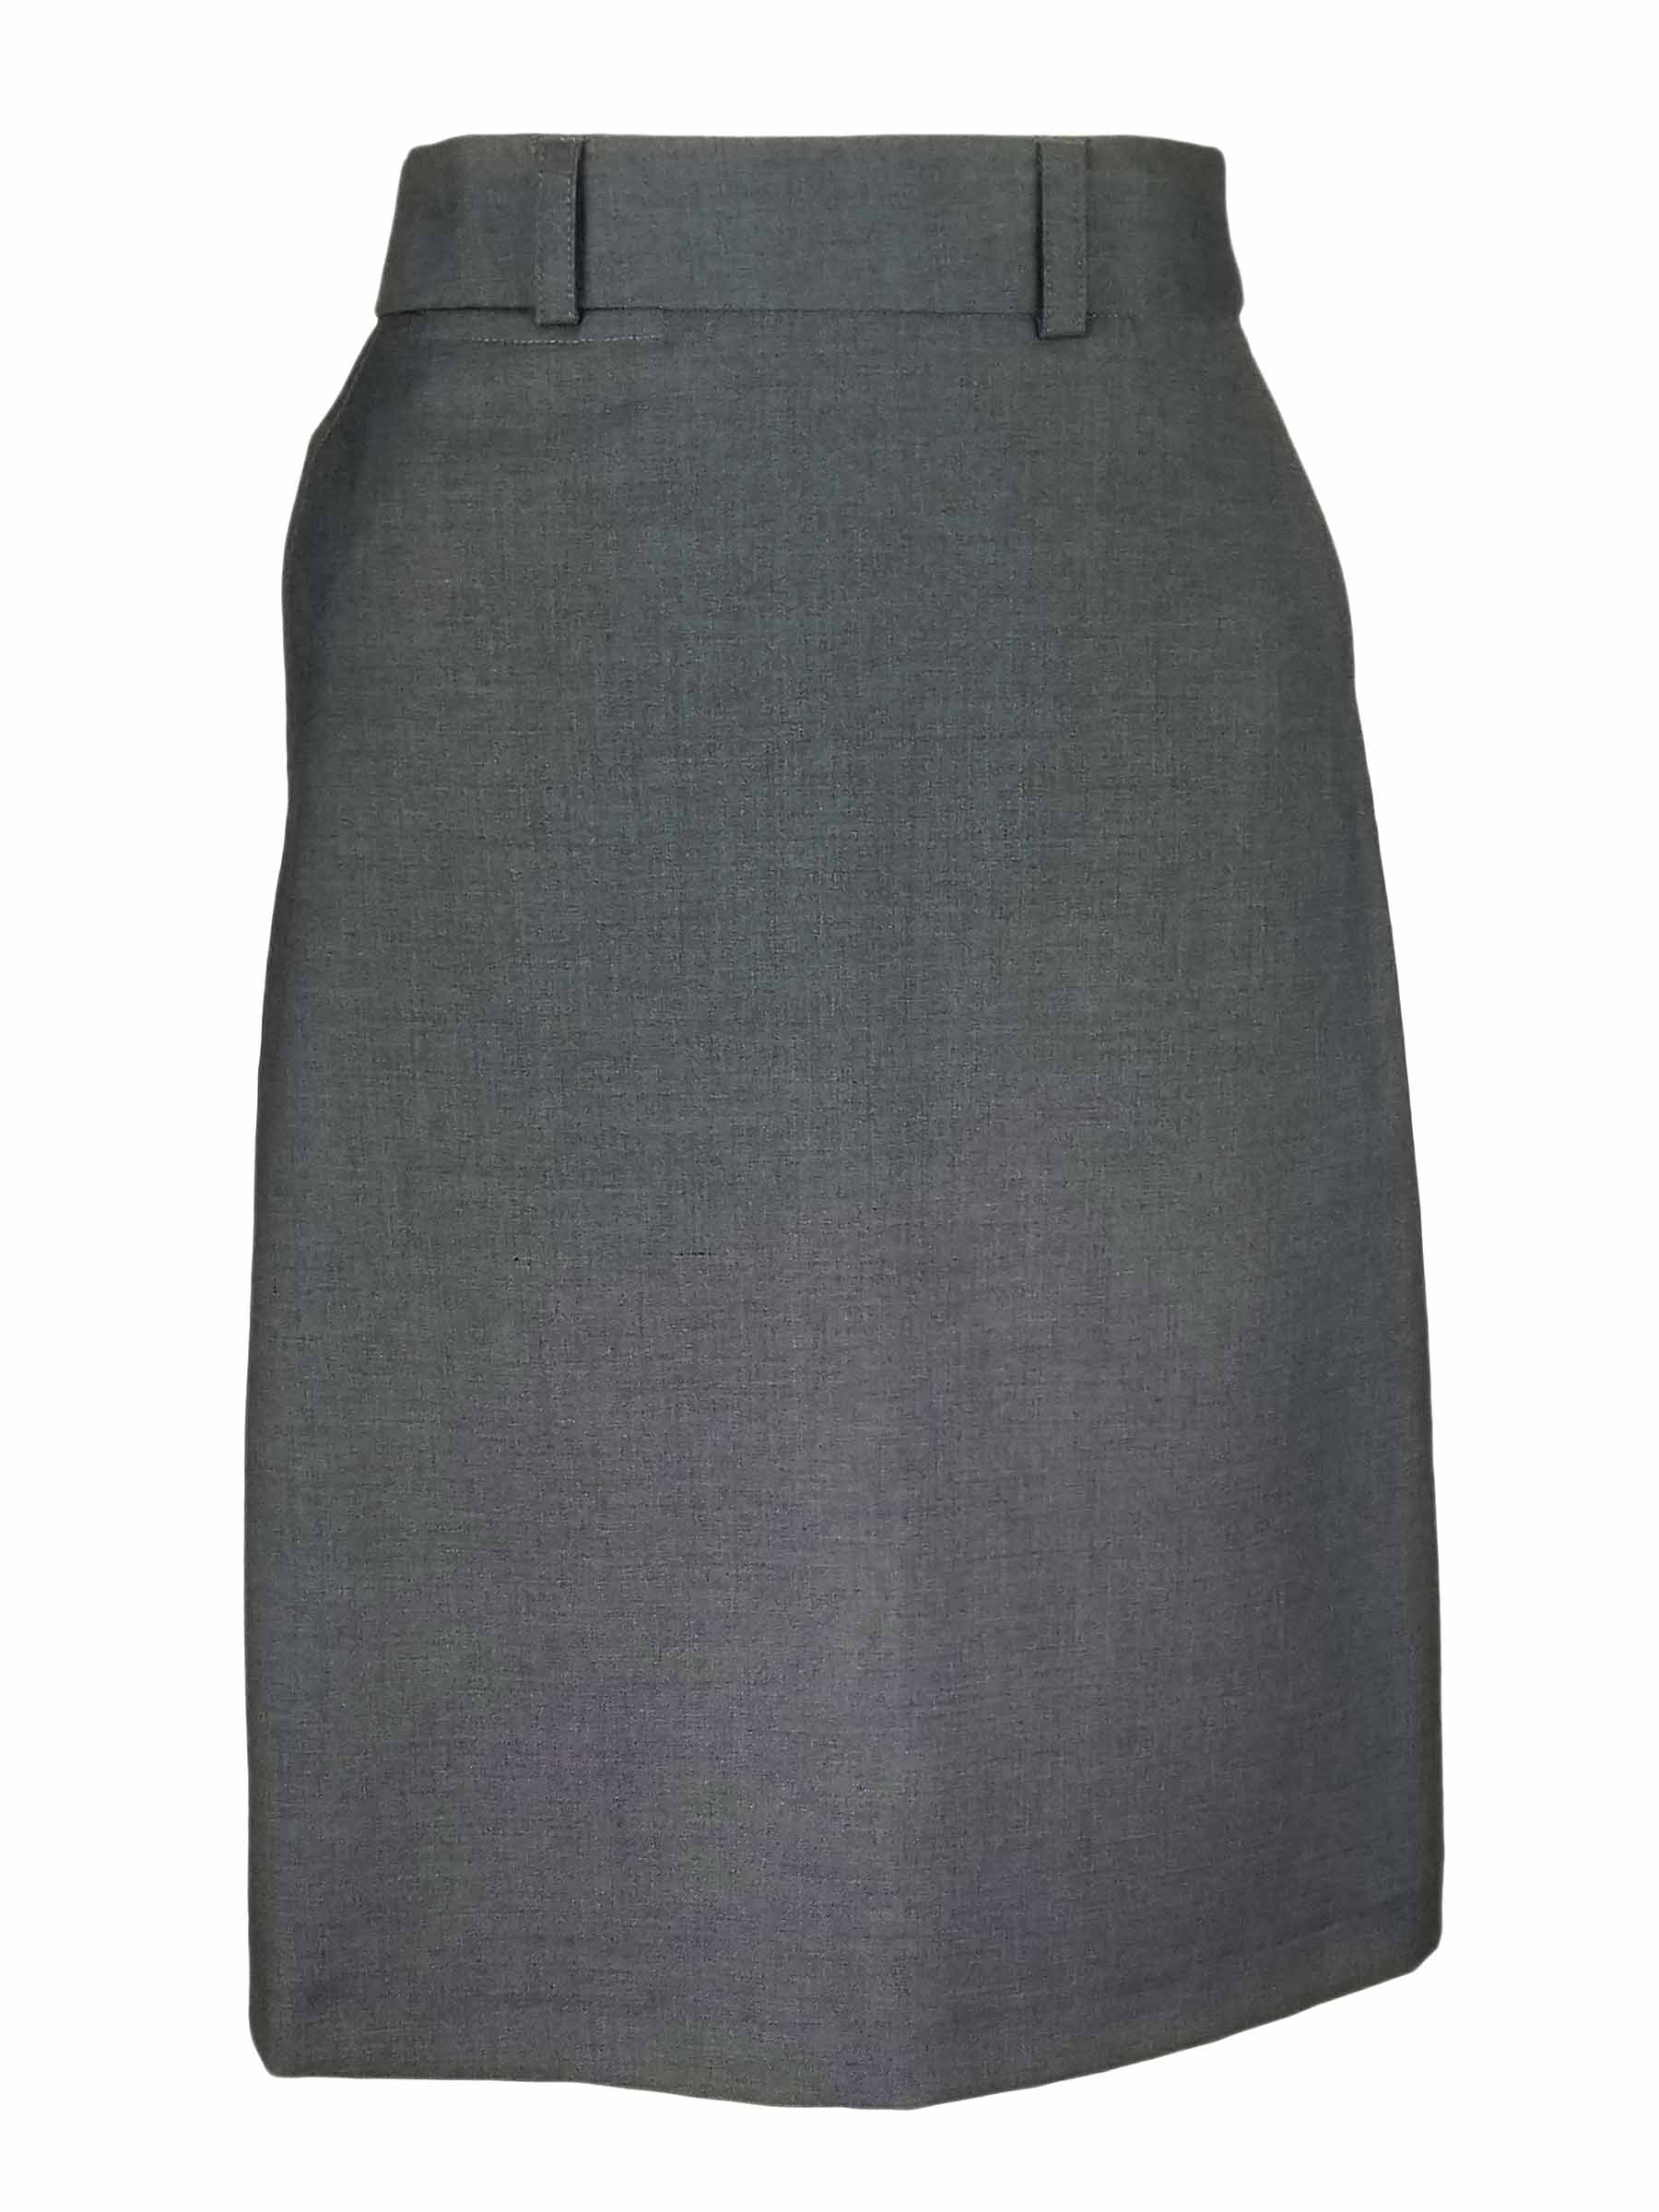 A-Line Skirt - Light Grey Wool Blend - Uniform Edit